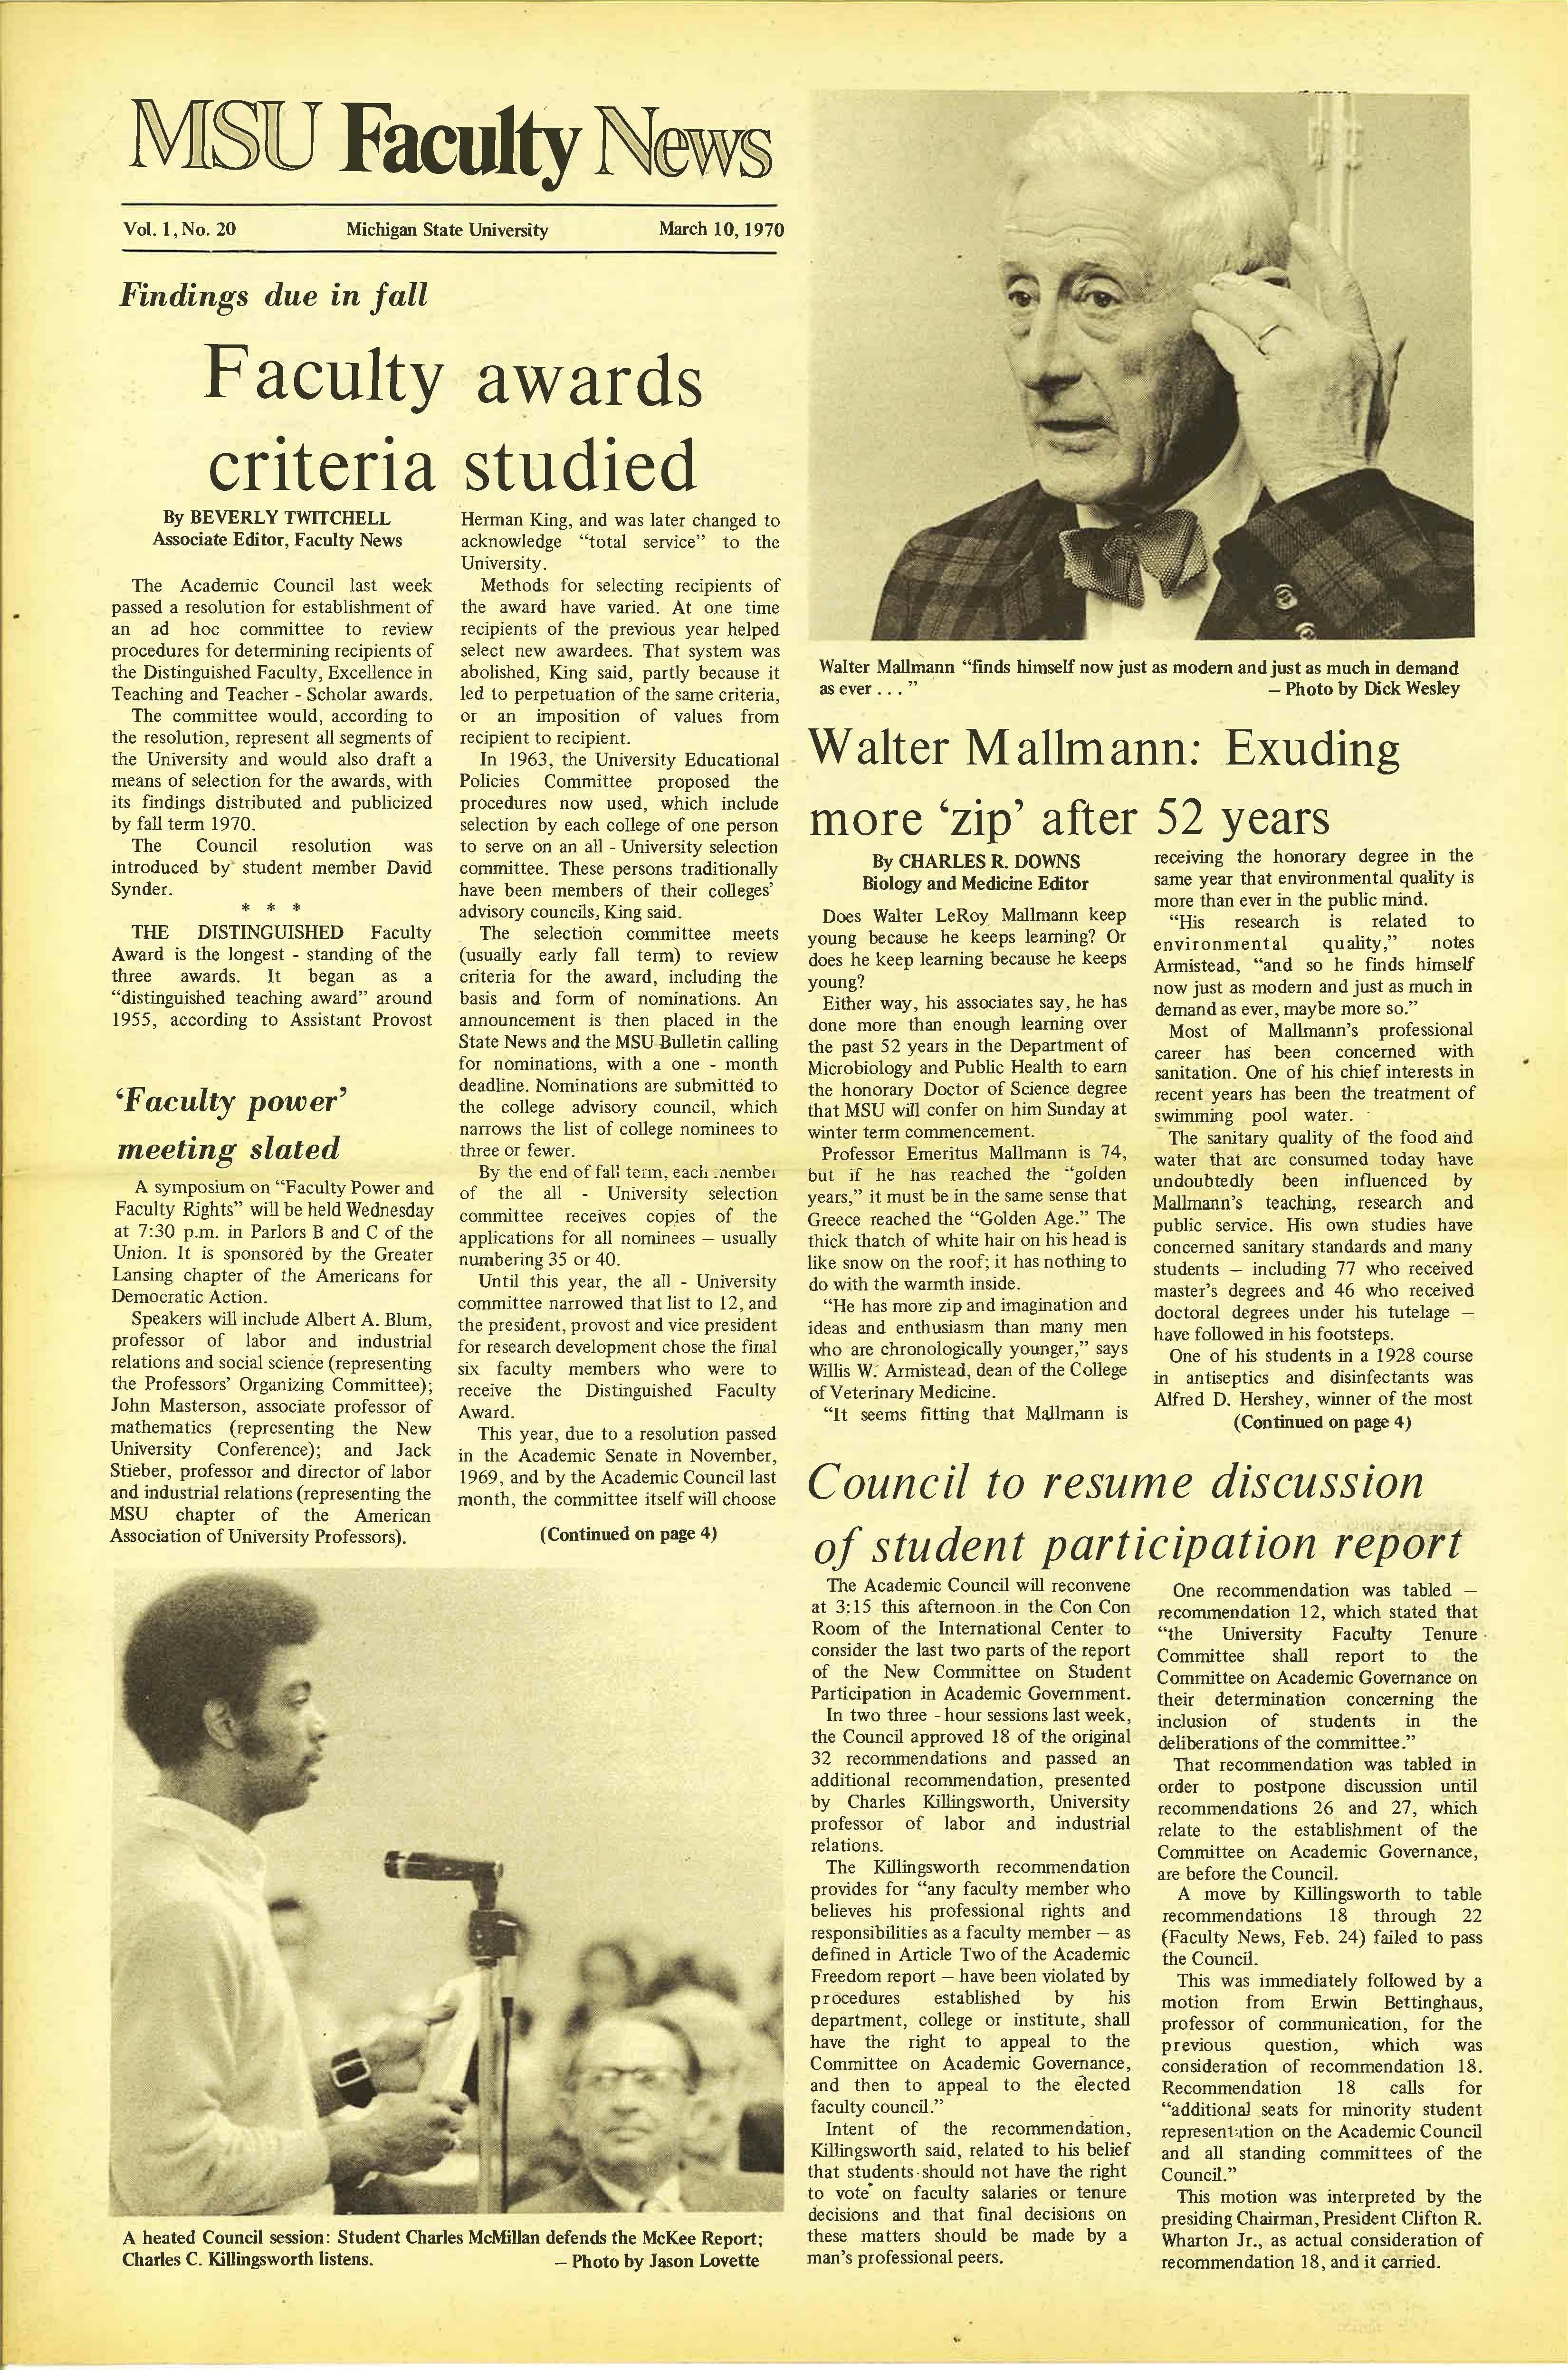 MSU News Bulletin, Vol. 1, No. 28, May 19, 1970